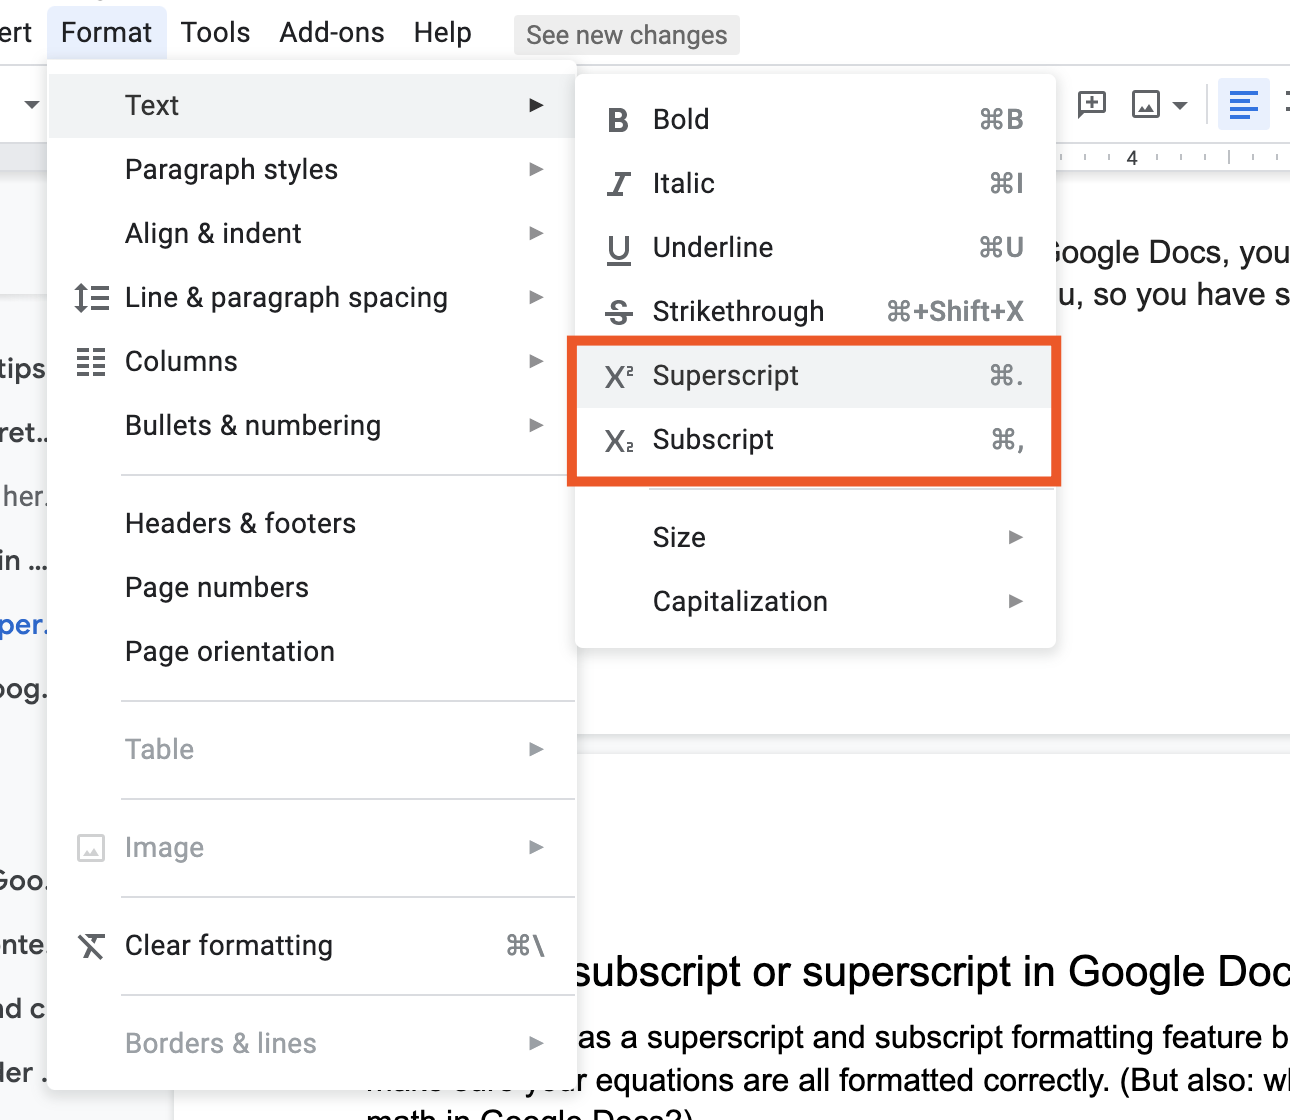 Subscript and superscript in Google Docs